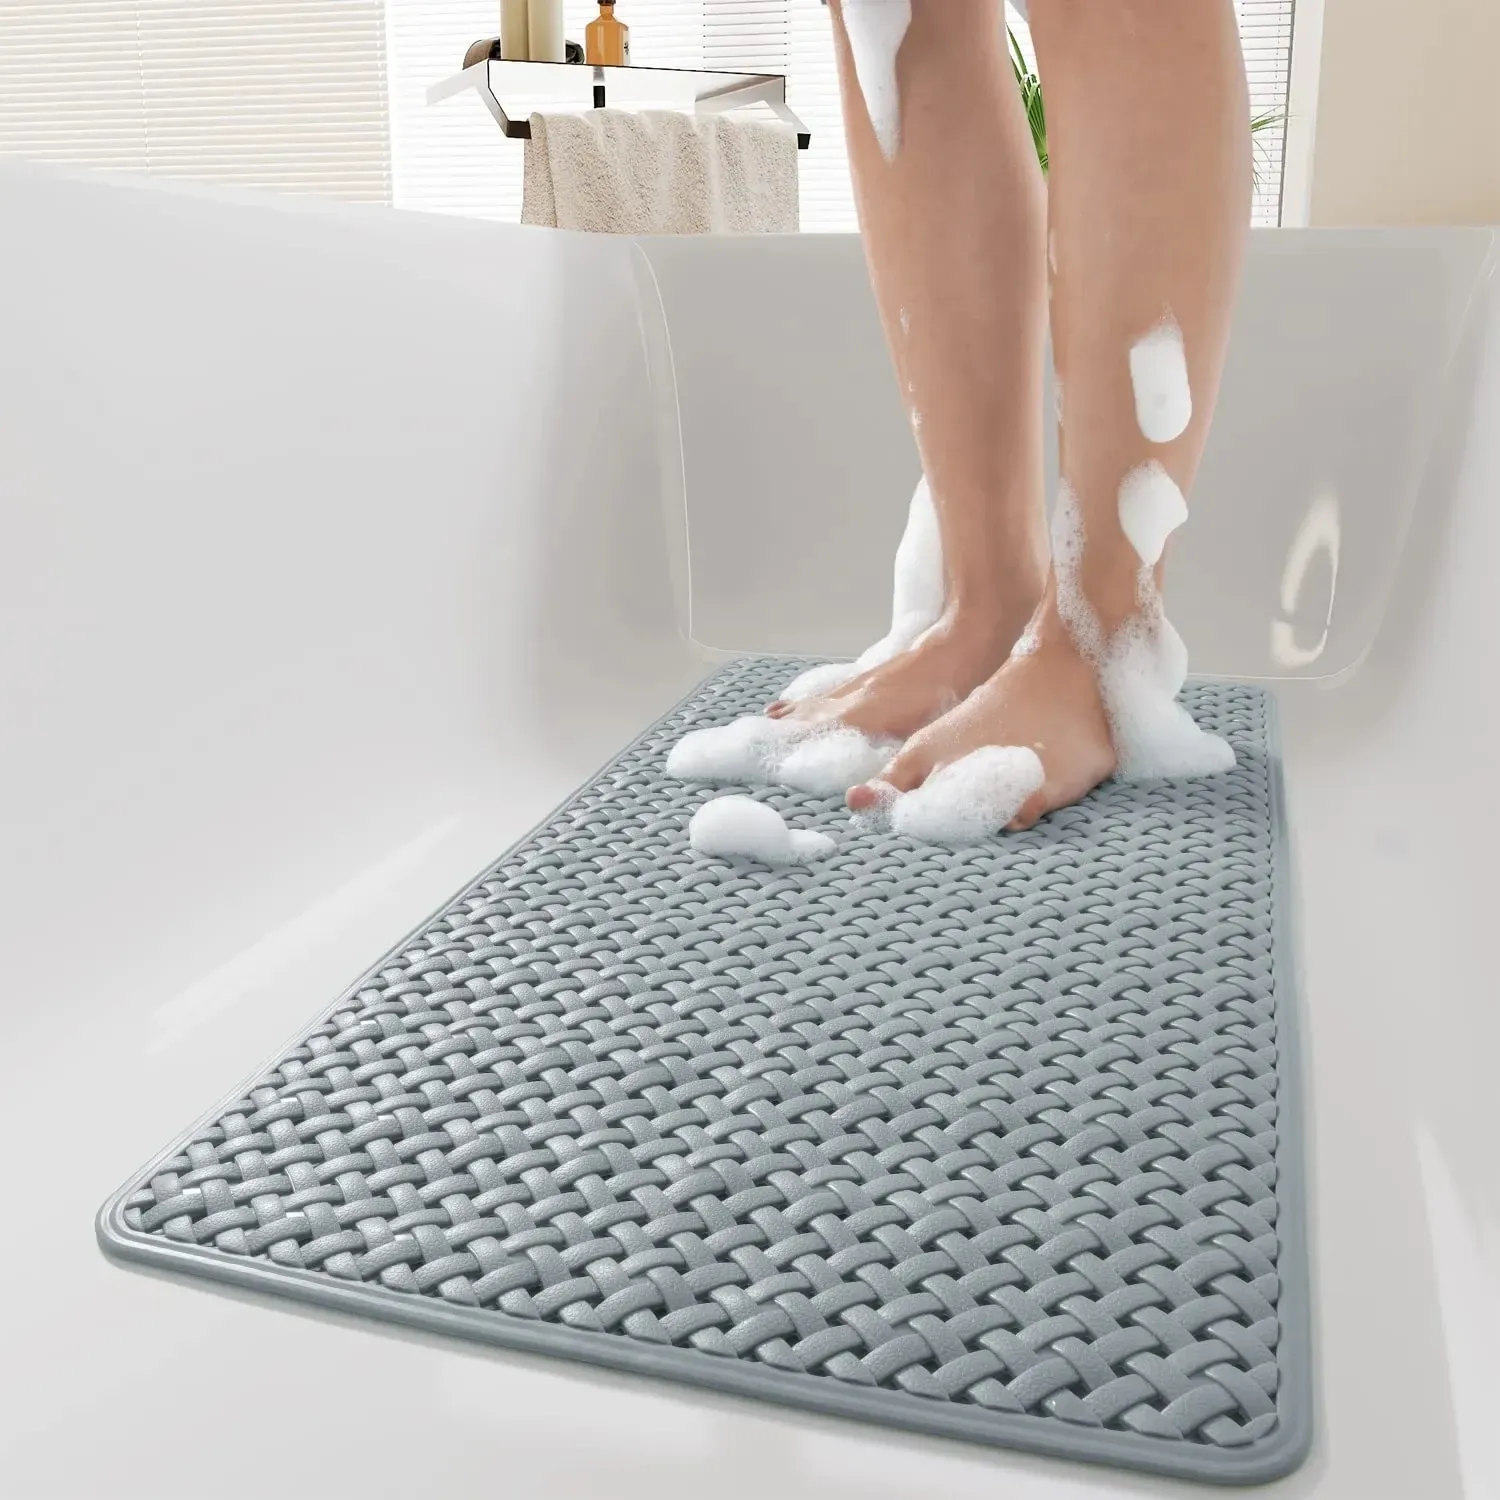 Tapetes novos tapete de banho antiderrapante com ventosa e furo de drenagem macio lavável à máquina tapete de banho antiderrapante adequado para crianças